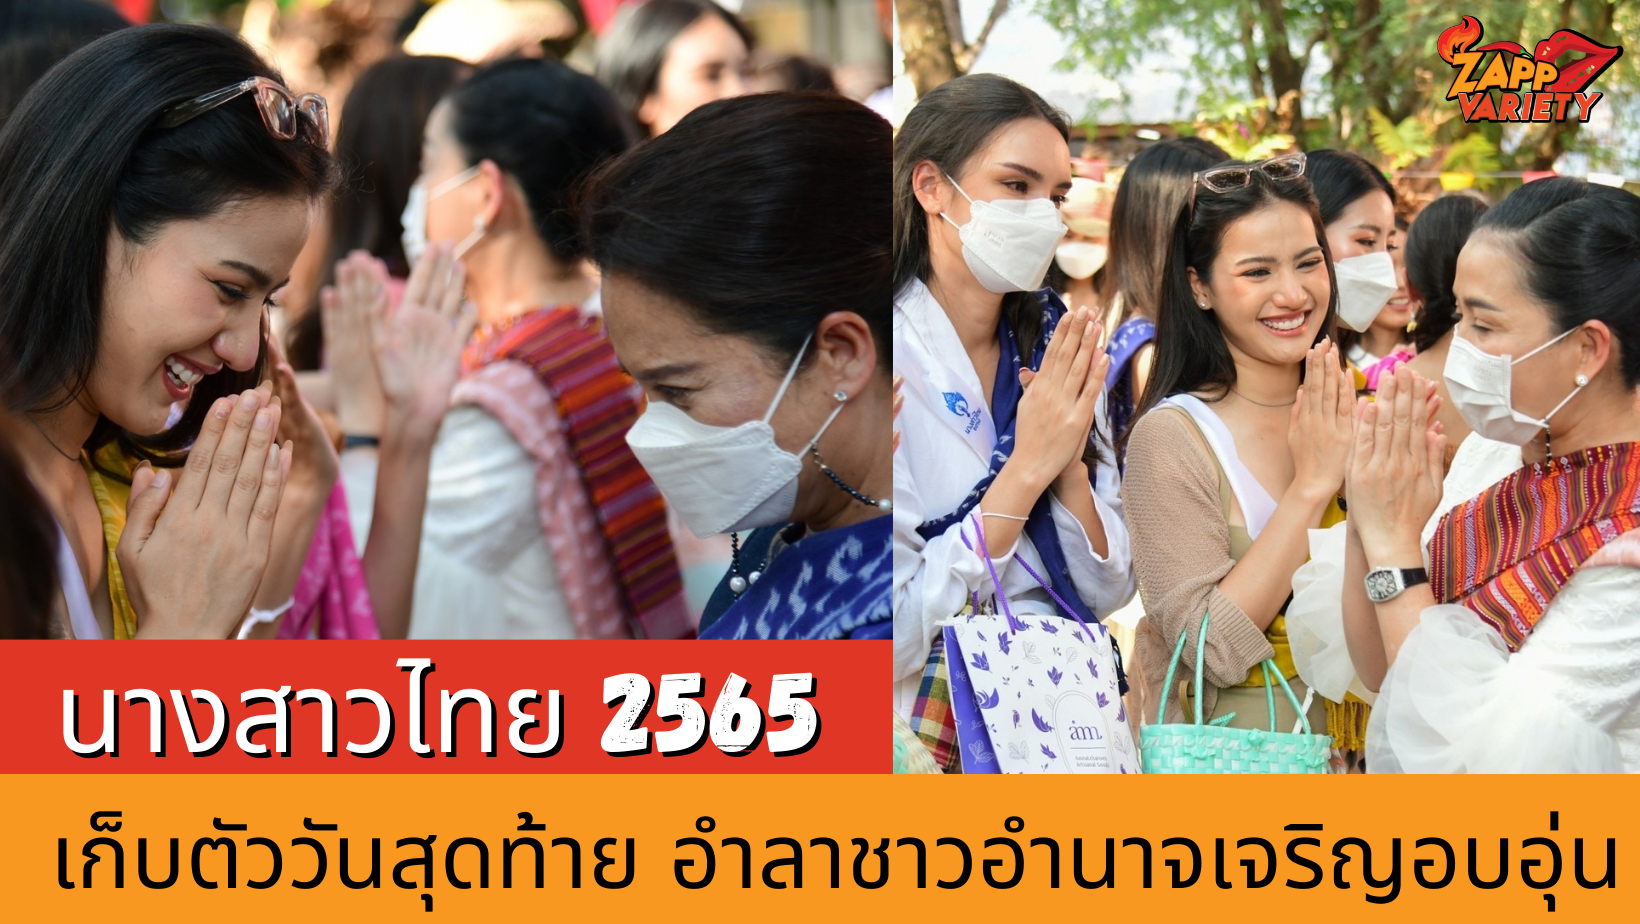 นางสาวไทย2565 เก็บตัววันสุดท้าย อำลาชาวอำนาจเจริญอย่างอบอุ่น 